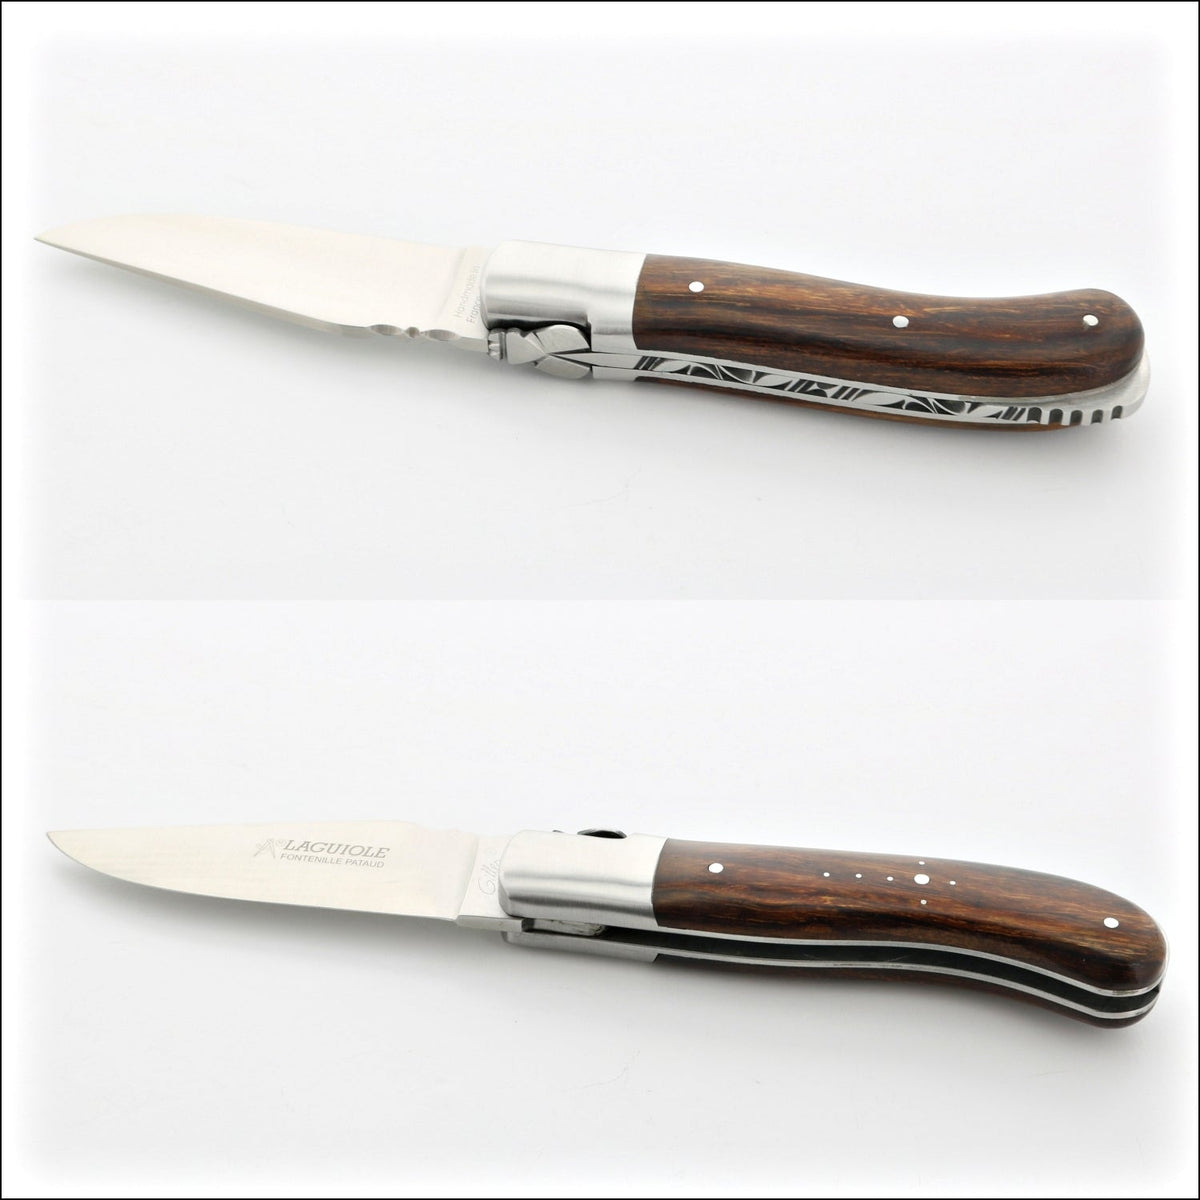 Laguiole Gentleman&#39;s Knife - Desert Ironwood